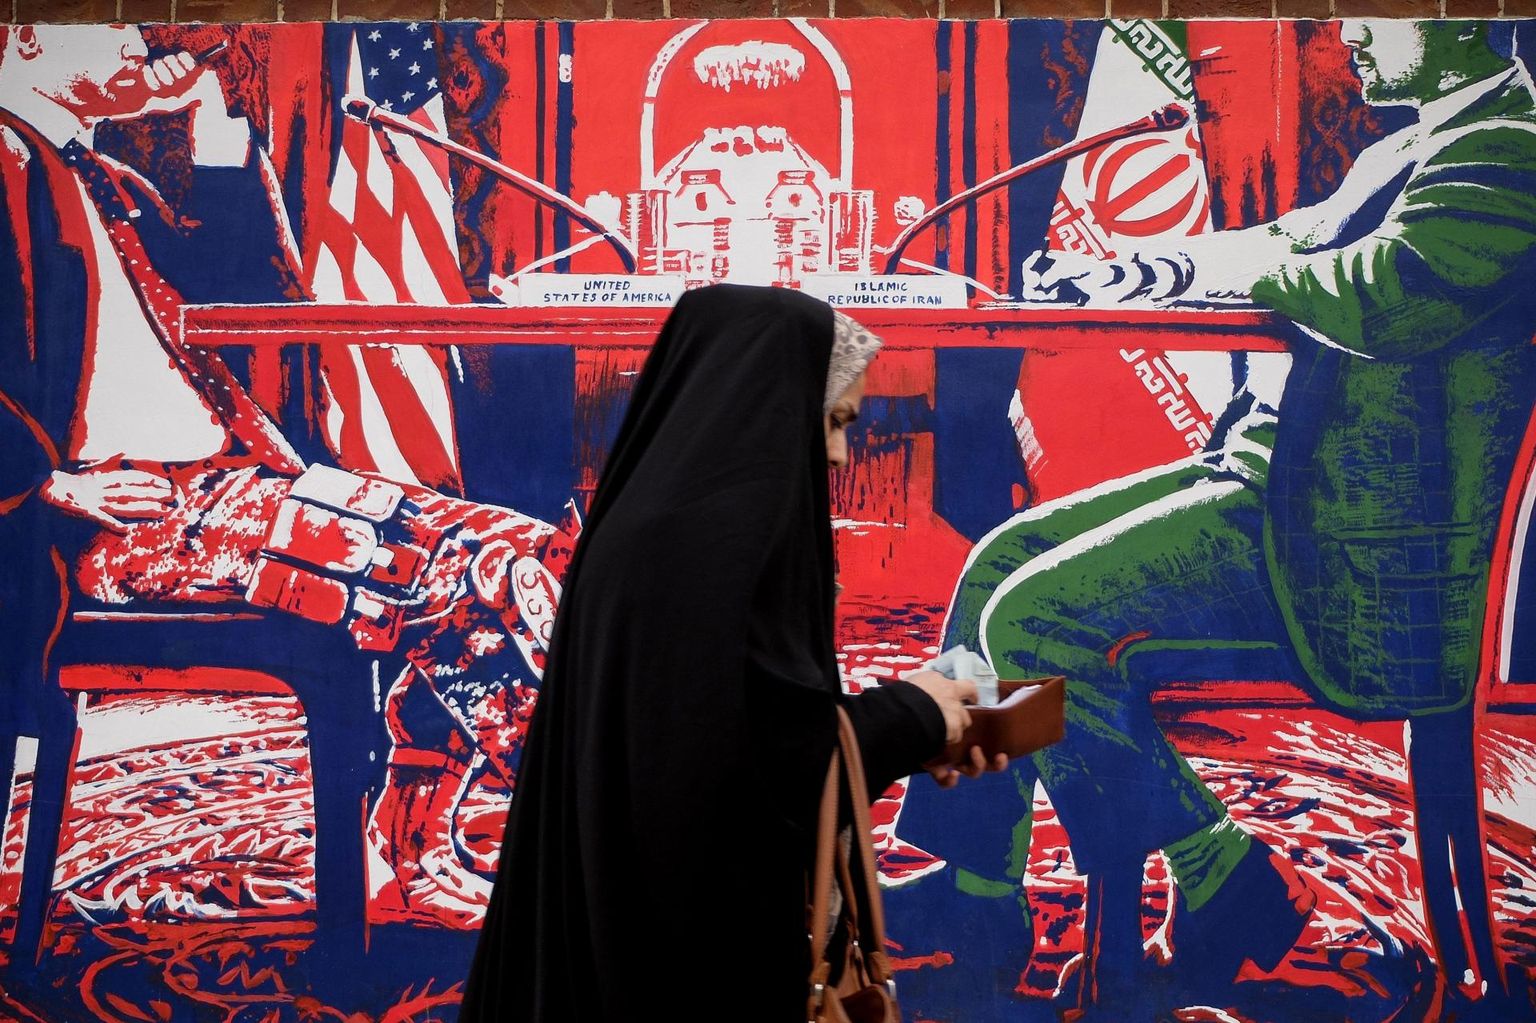 Ameerika Ühendriikide ja Iraani vastasseis on kestnud juba üle 40 aasta. Sellest annavad Teherani tänavapildis märku ka poliitilised seinamaalid. 